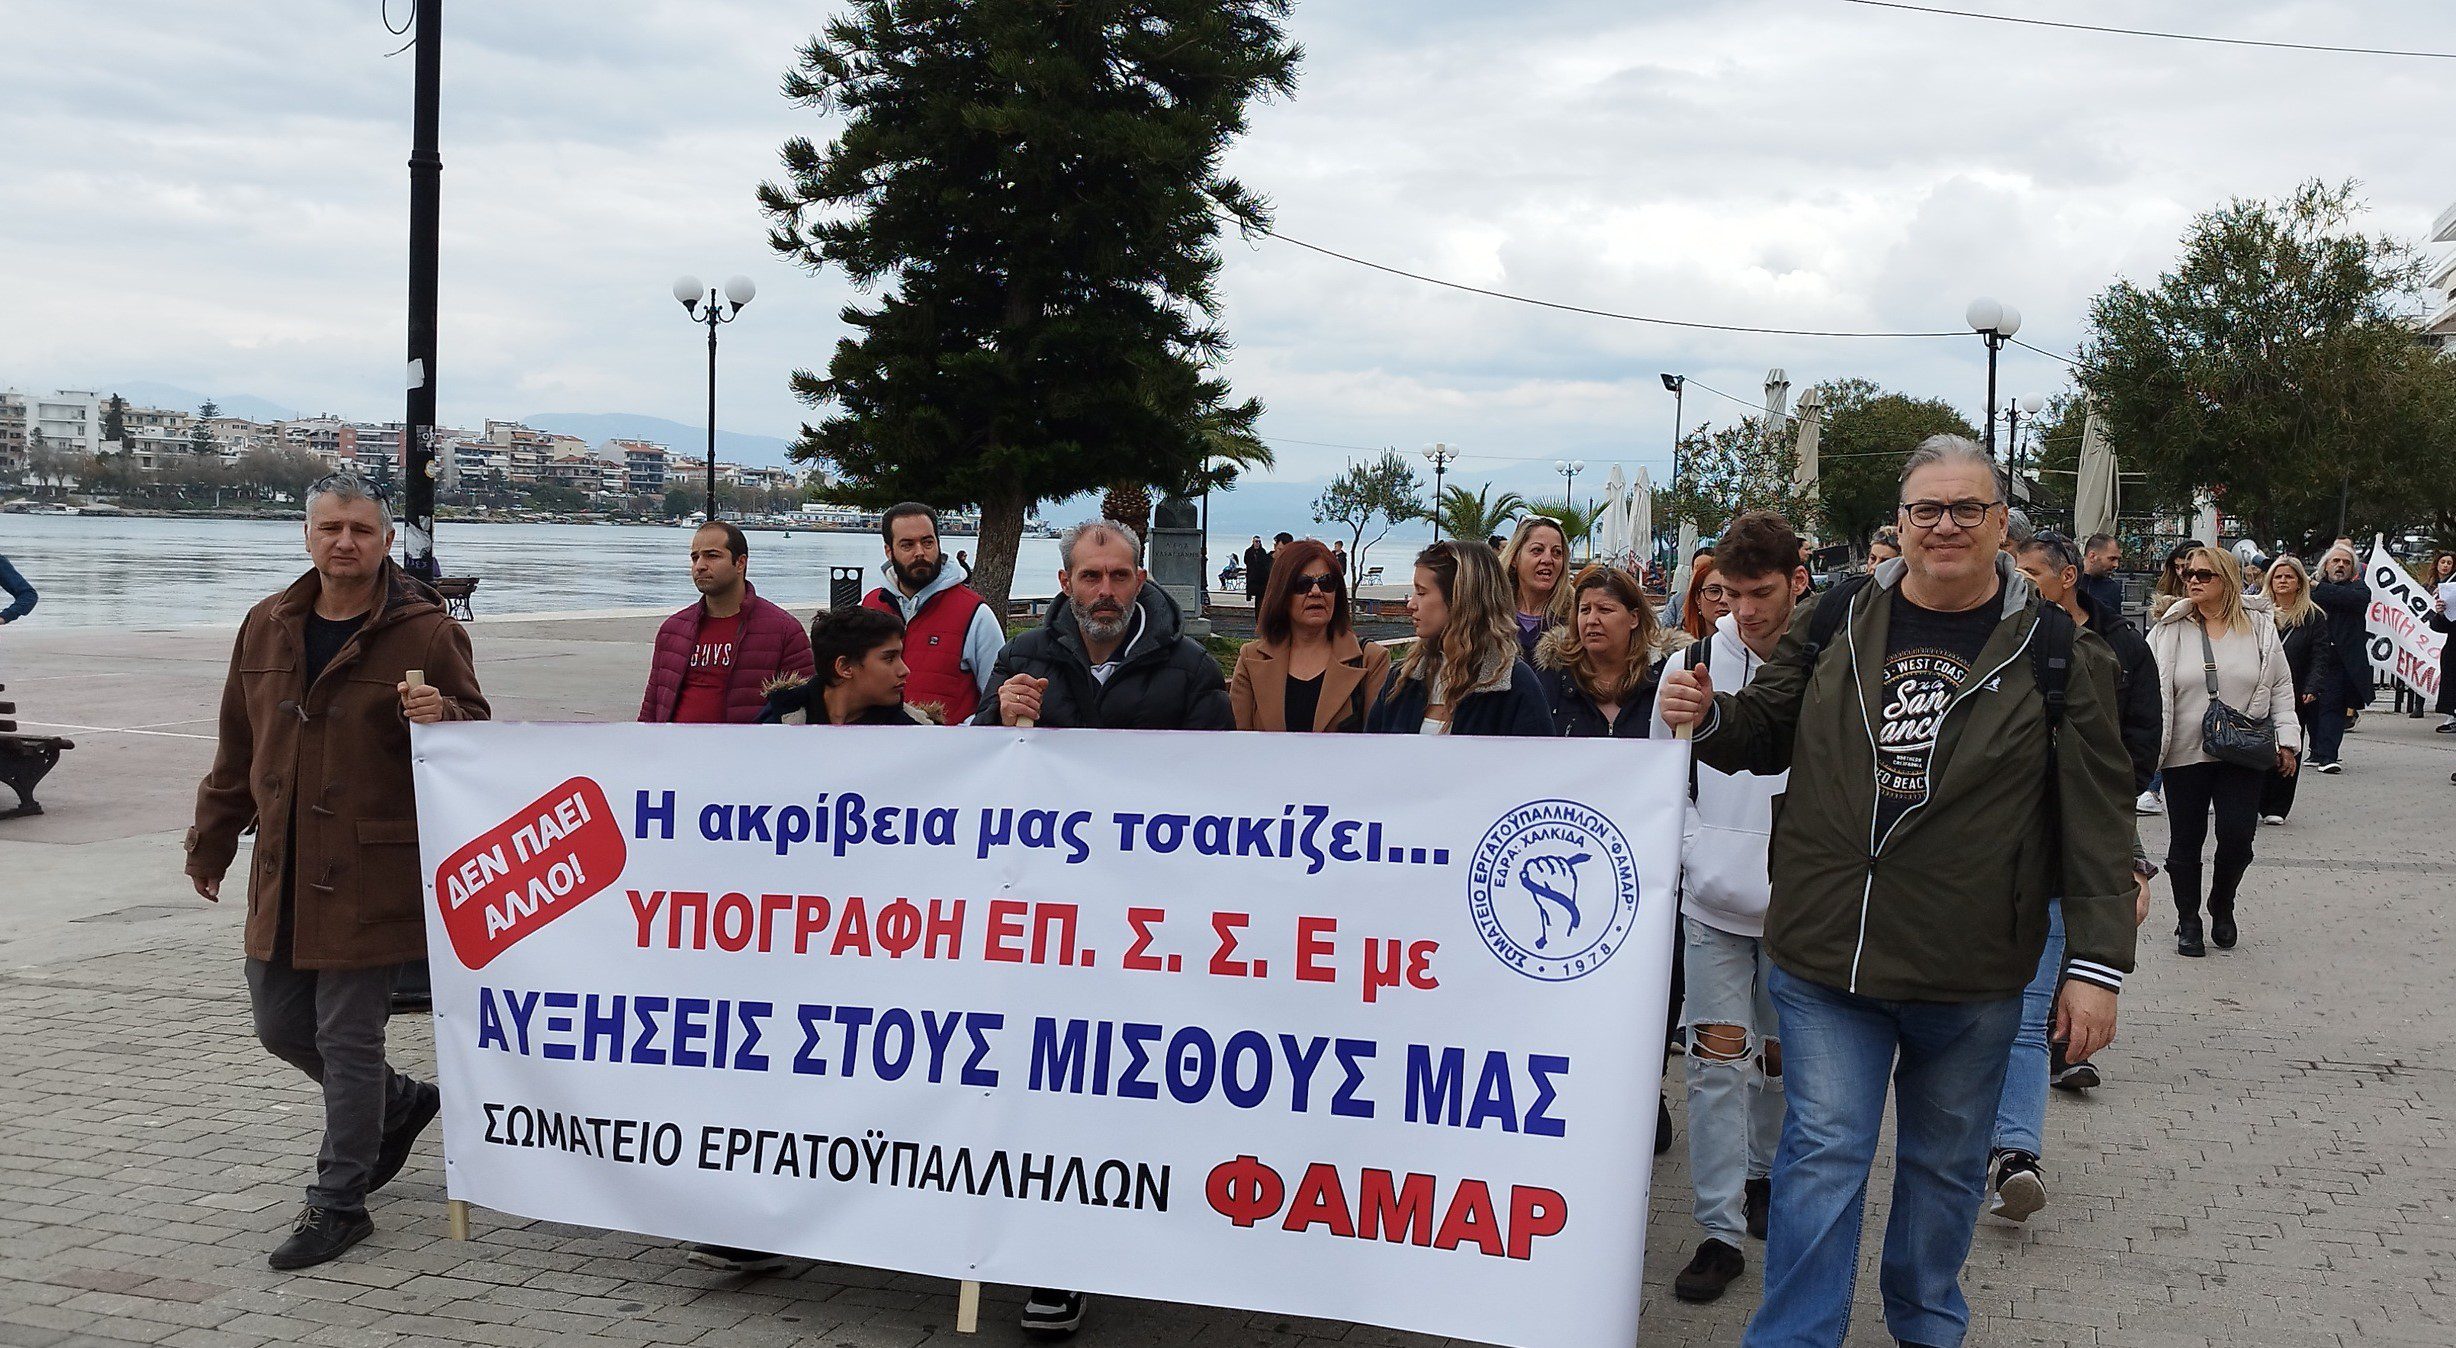 Στους δρόμους οι εργαζόμενοι της Εύβοιας: «Η ακρίβεια μας τσακίζει» – Ζητούν αυξήσεις στους μισθούς